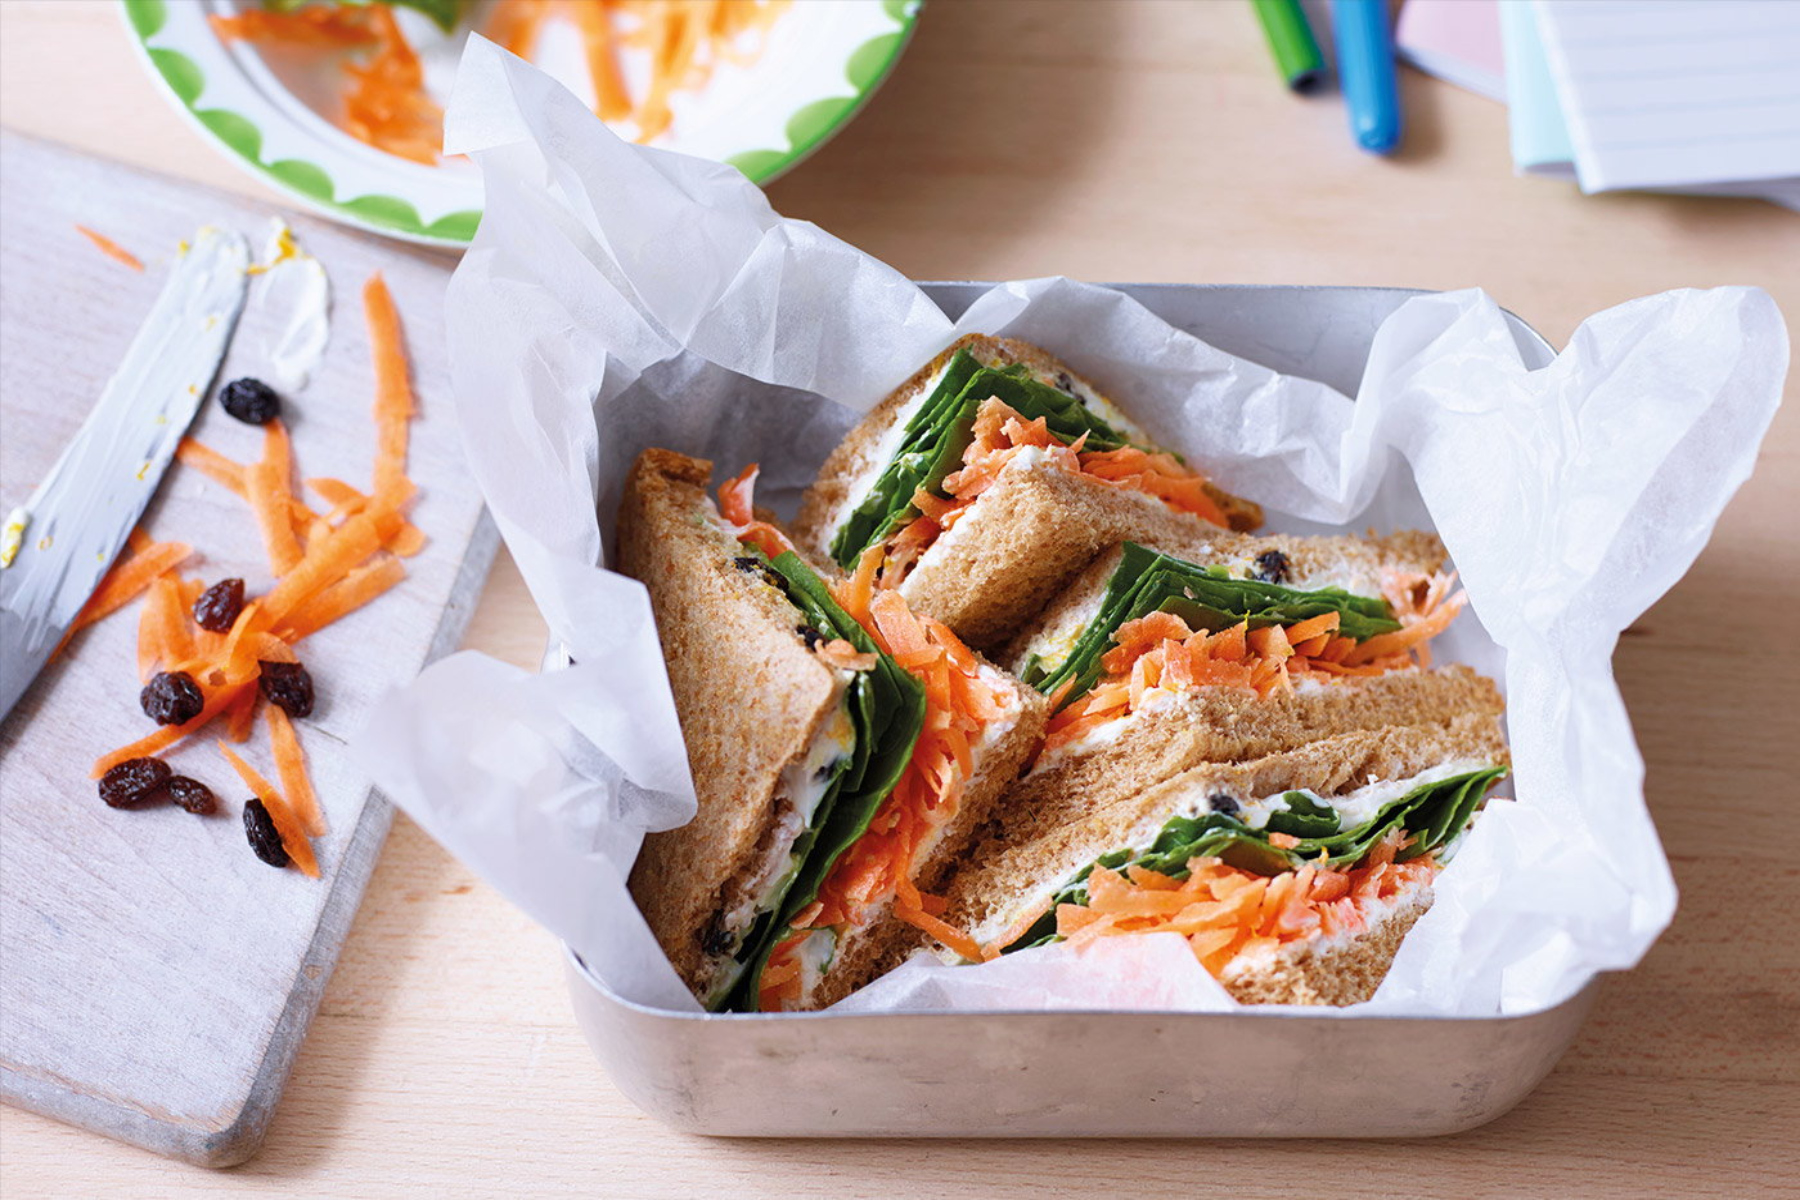 Σνακ: Νόστιμο σάντουιτς για τη δουλειά